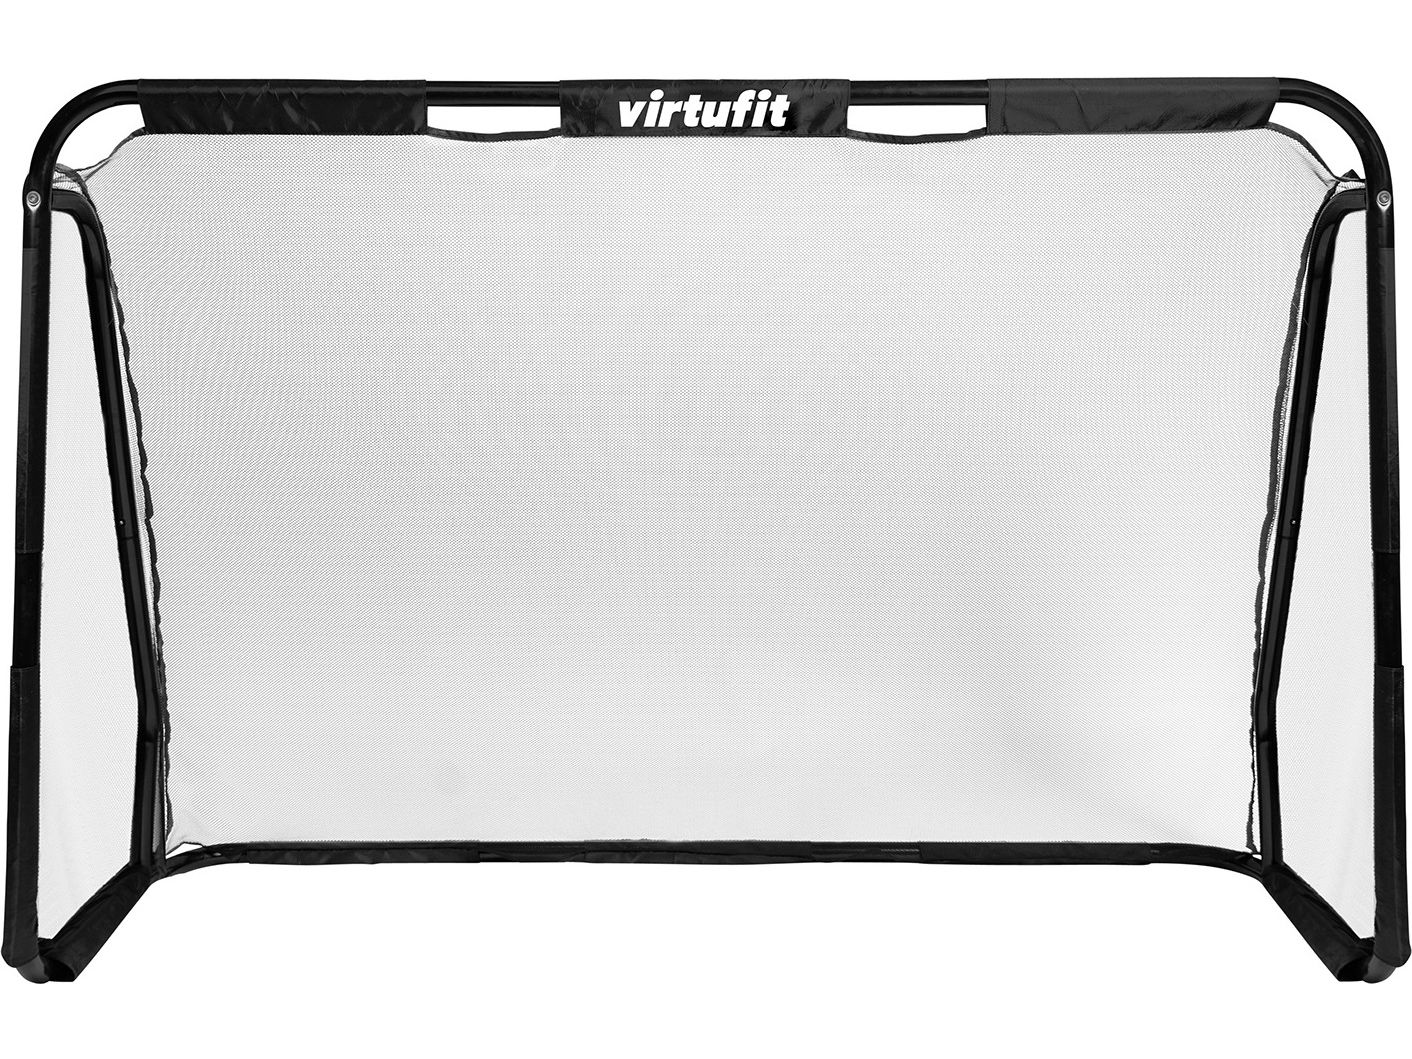 virtufit-voetbaldoel-met-doelwand-170-x-110-cm